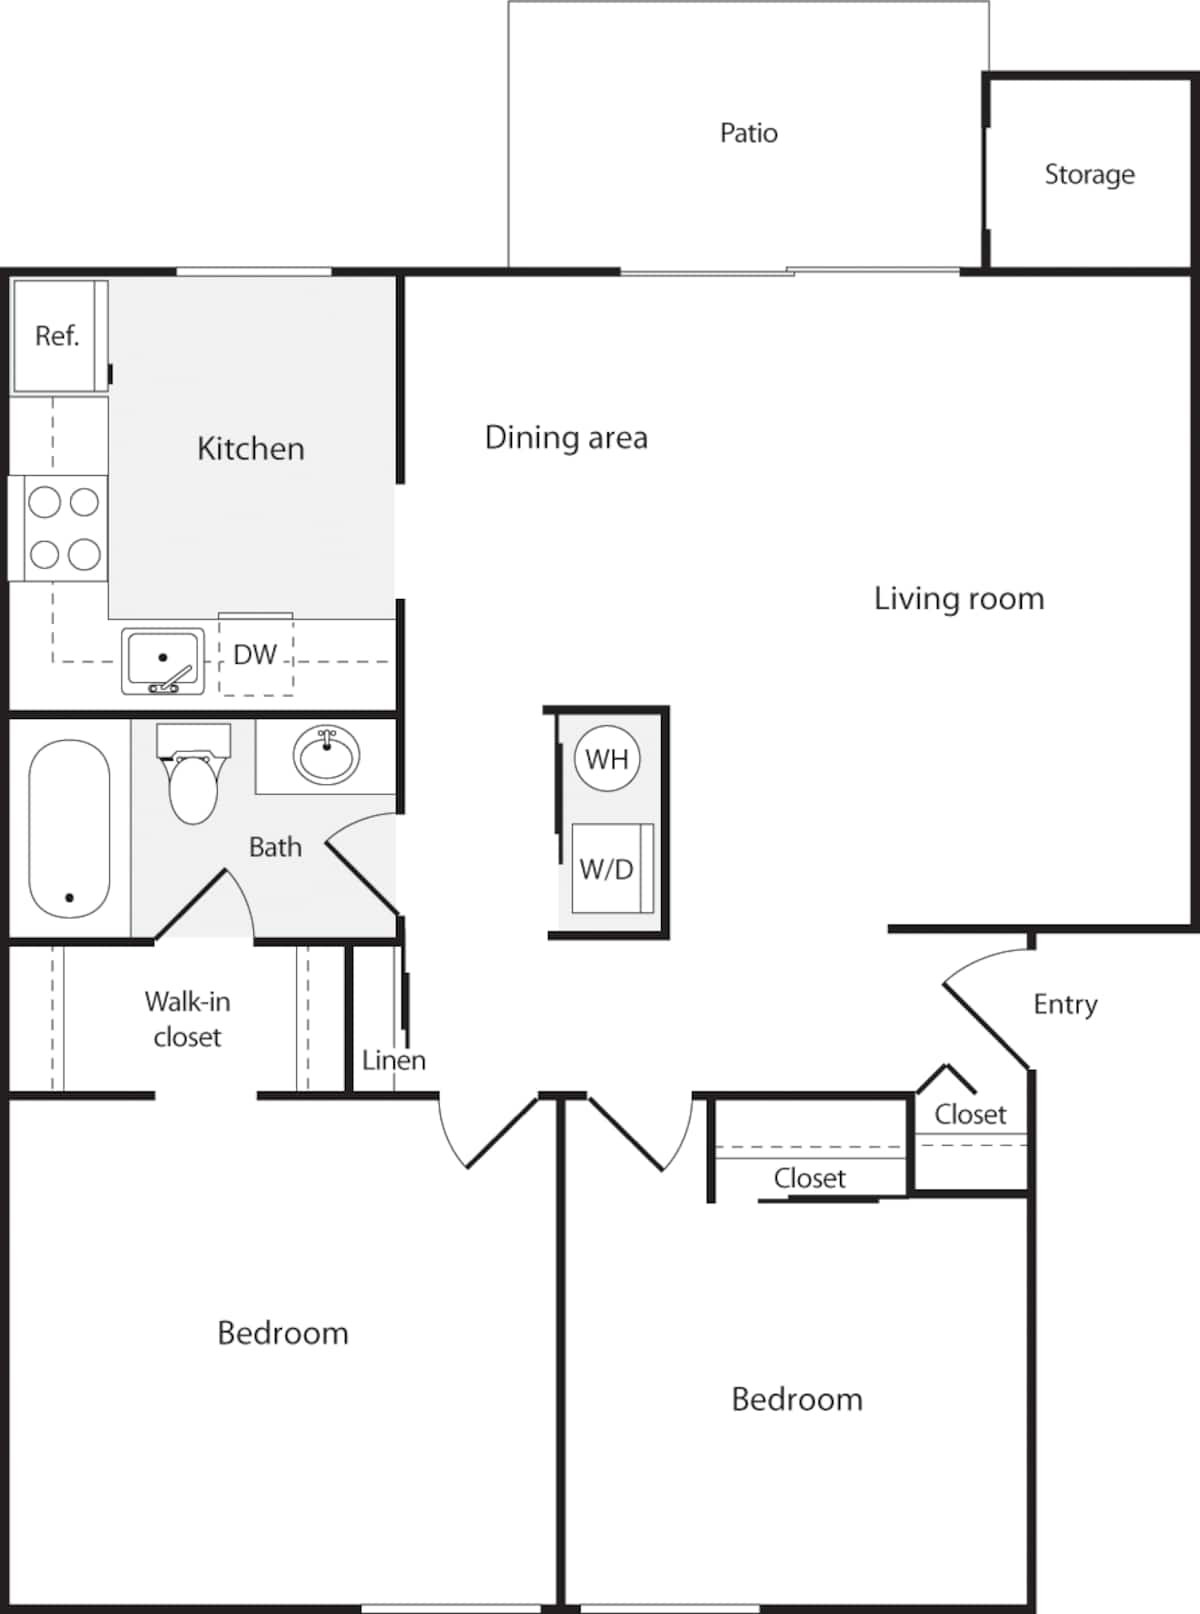 Floorplan diagram for 2 Bedrooms B, showing 2 bedroom